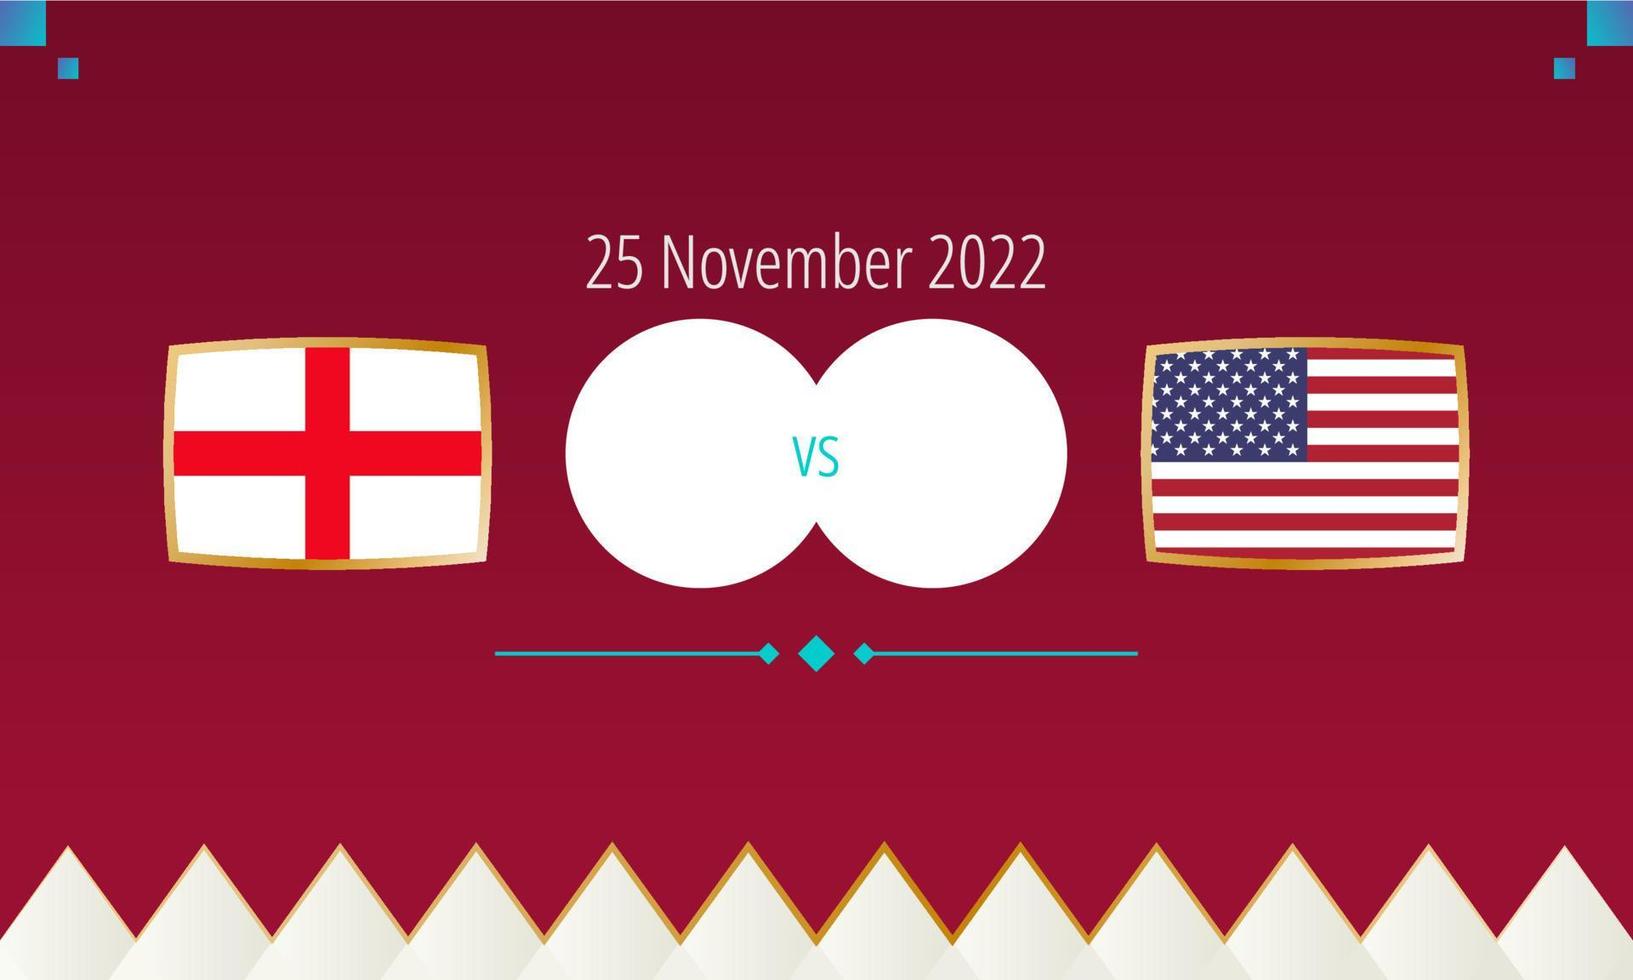 England mot förenad stater fotboll match, internationell fotboll konkurrens 2022. vektor